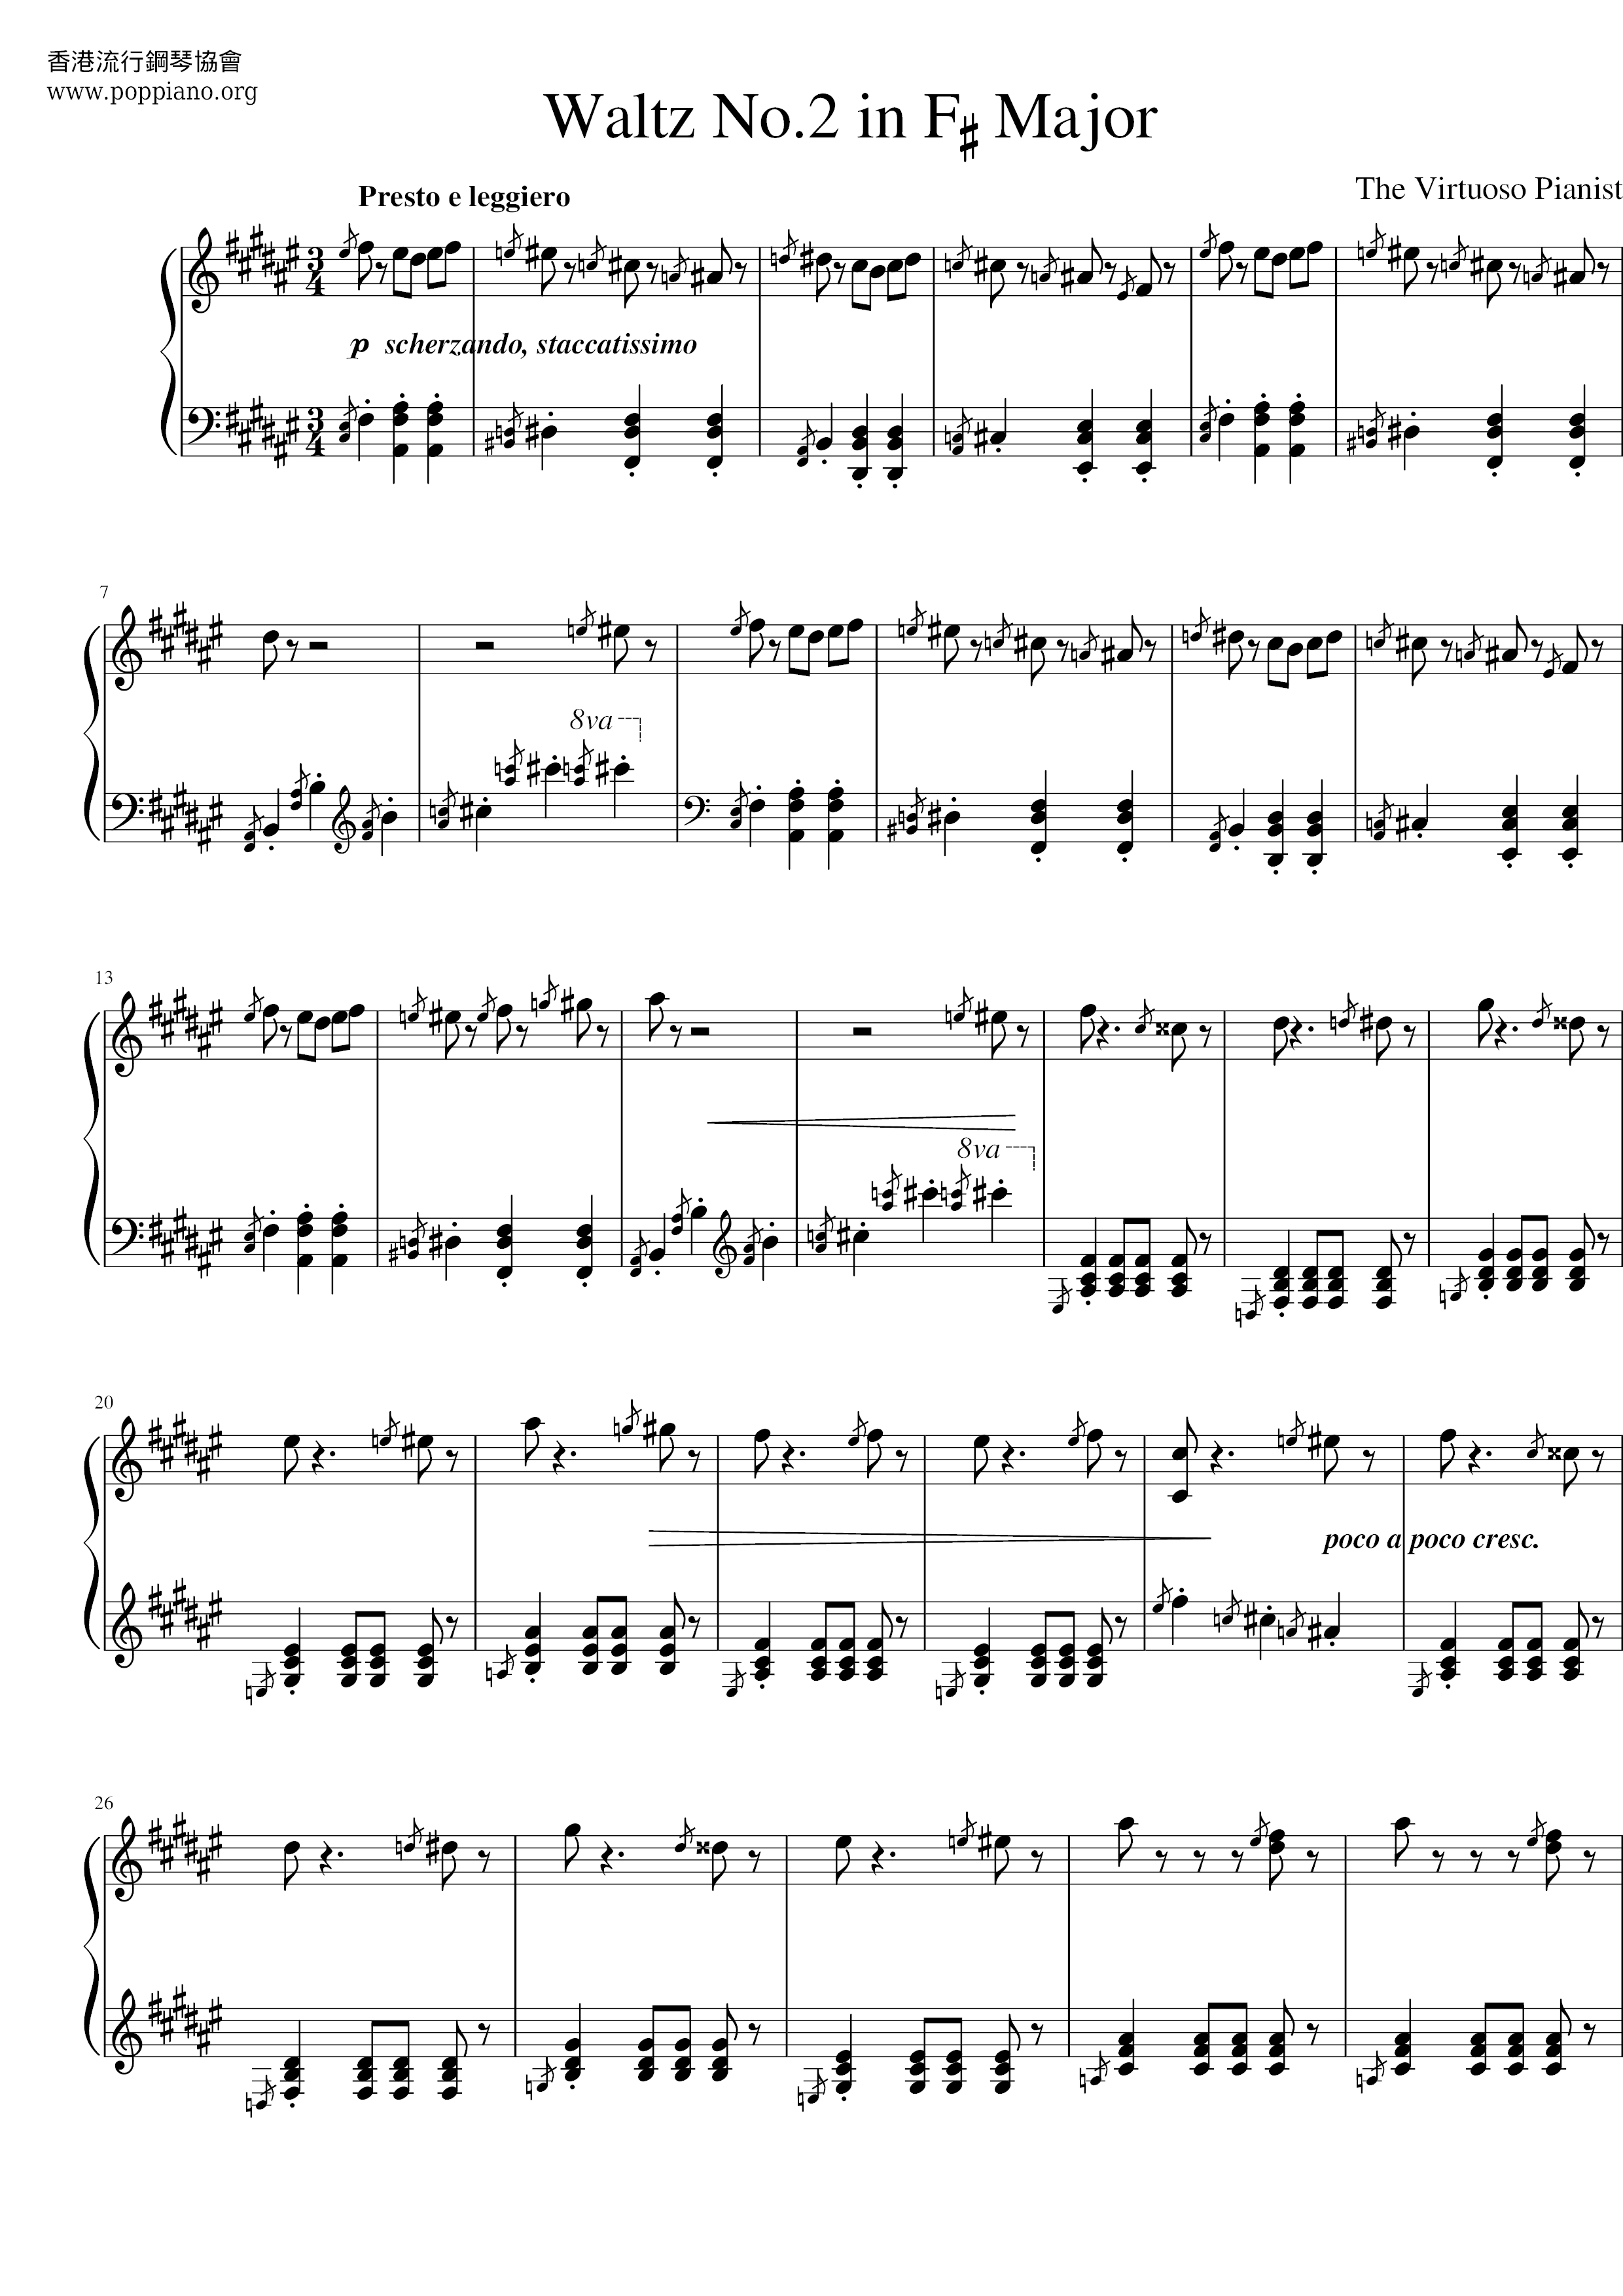 Waltz No.2 In F-sharp Major Score